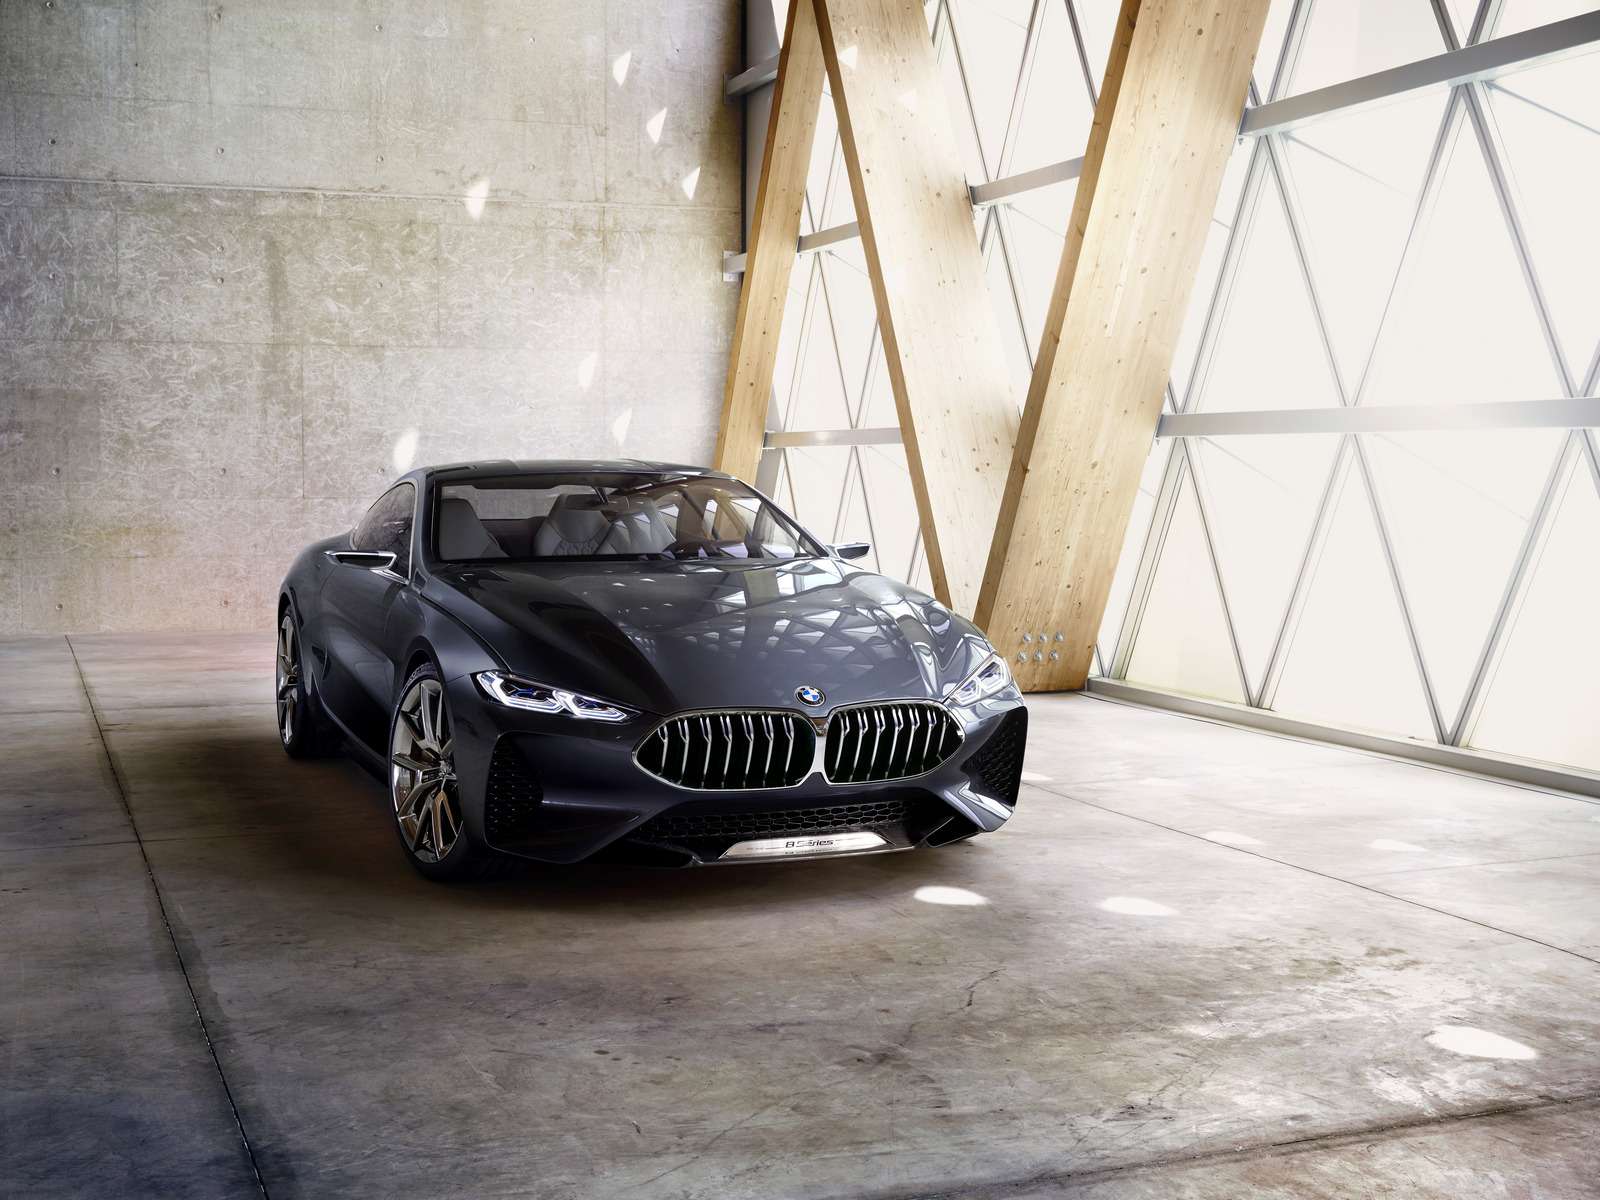 Великолепная «восьмерка»: новое купе BMW — теперь с кристаллами! — фото 756647